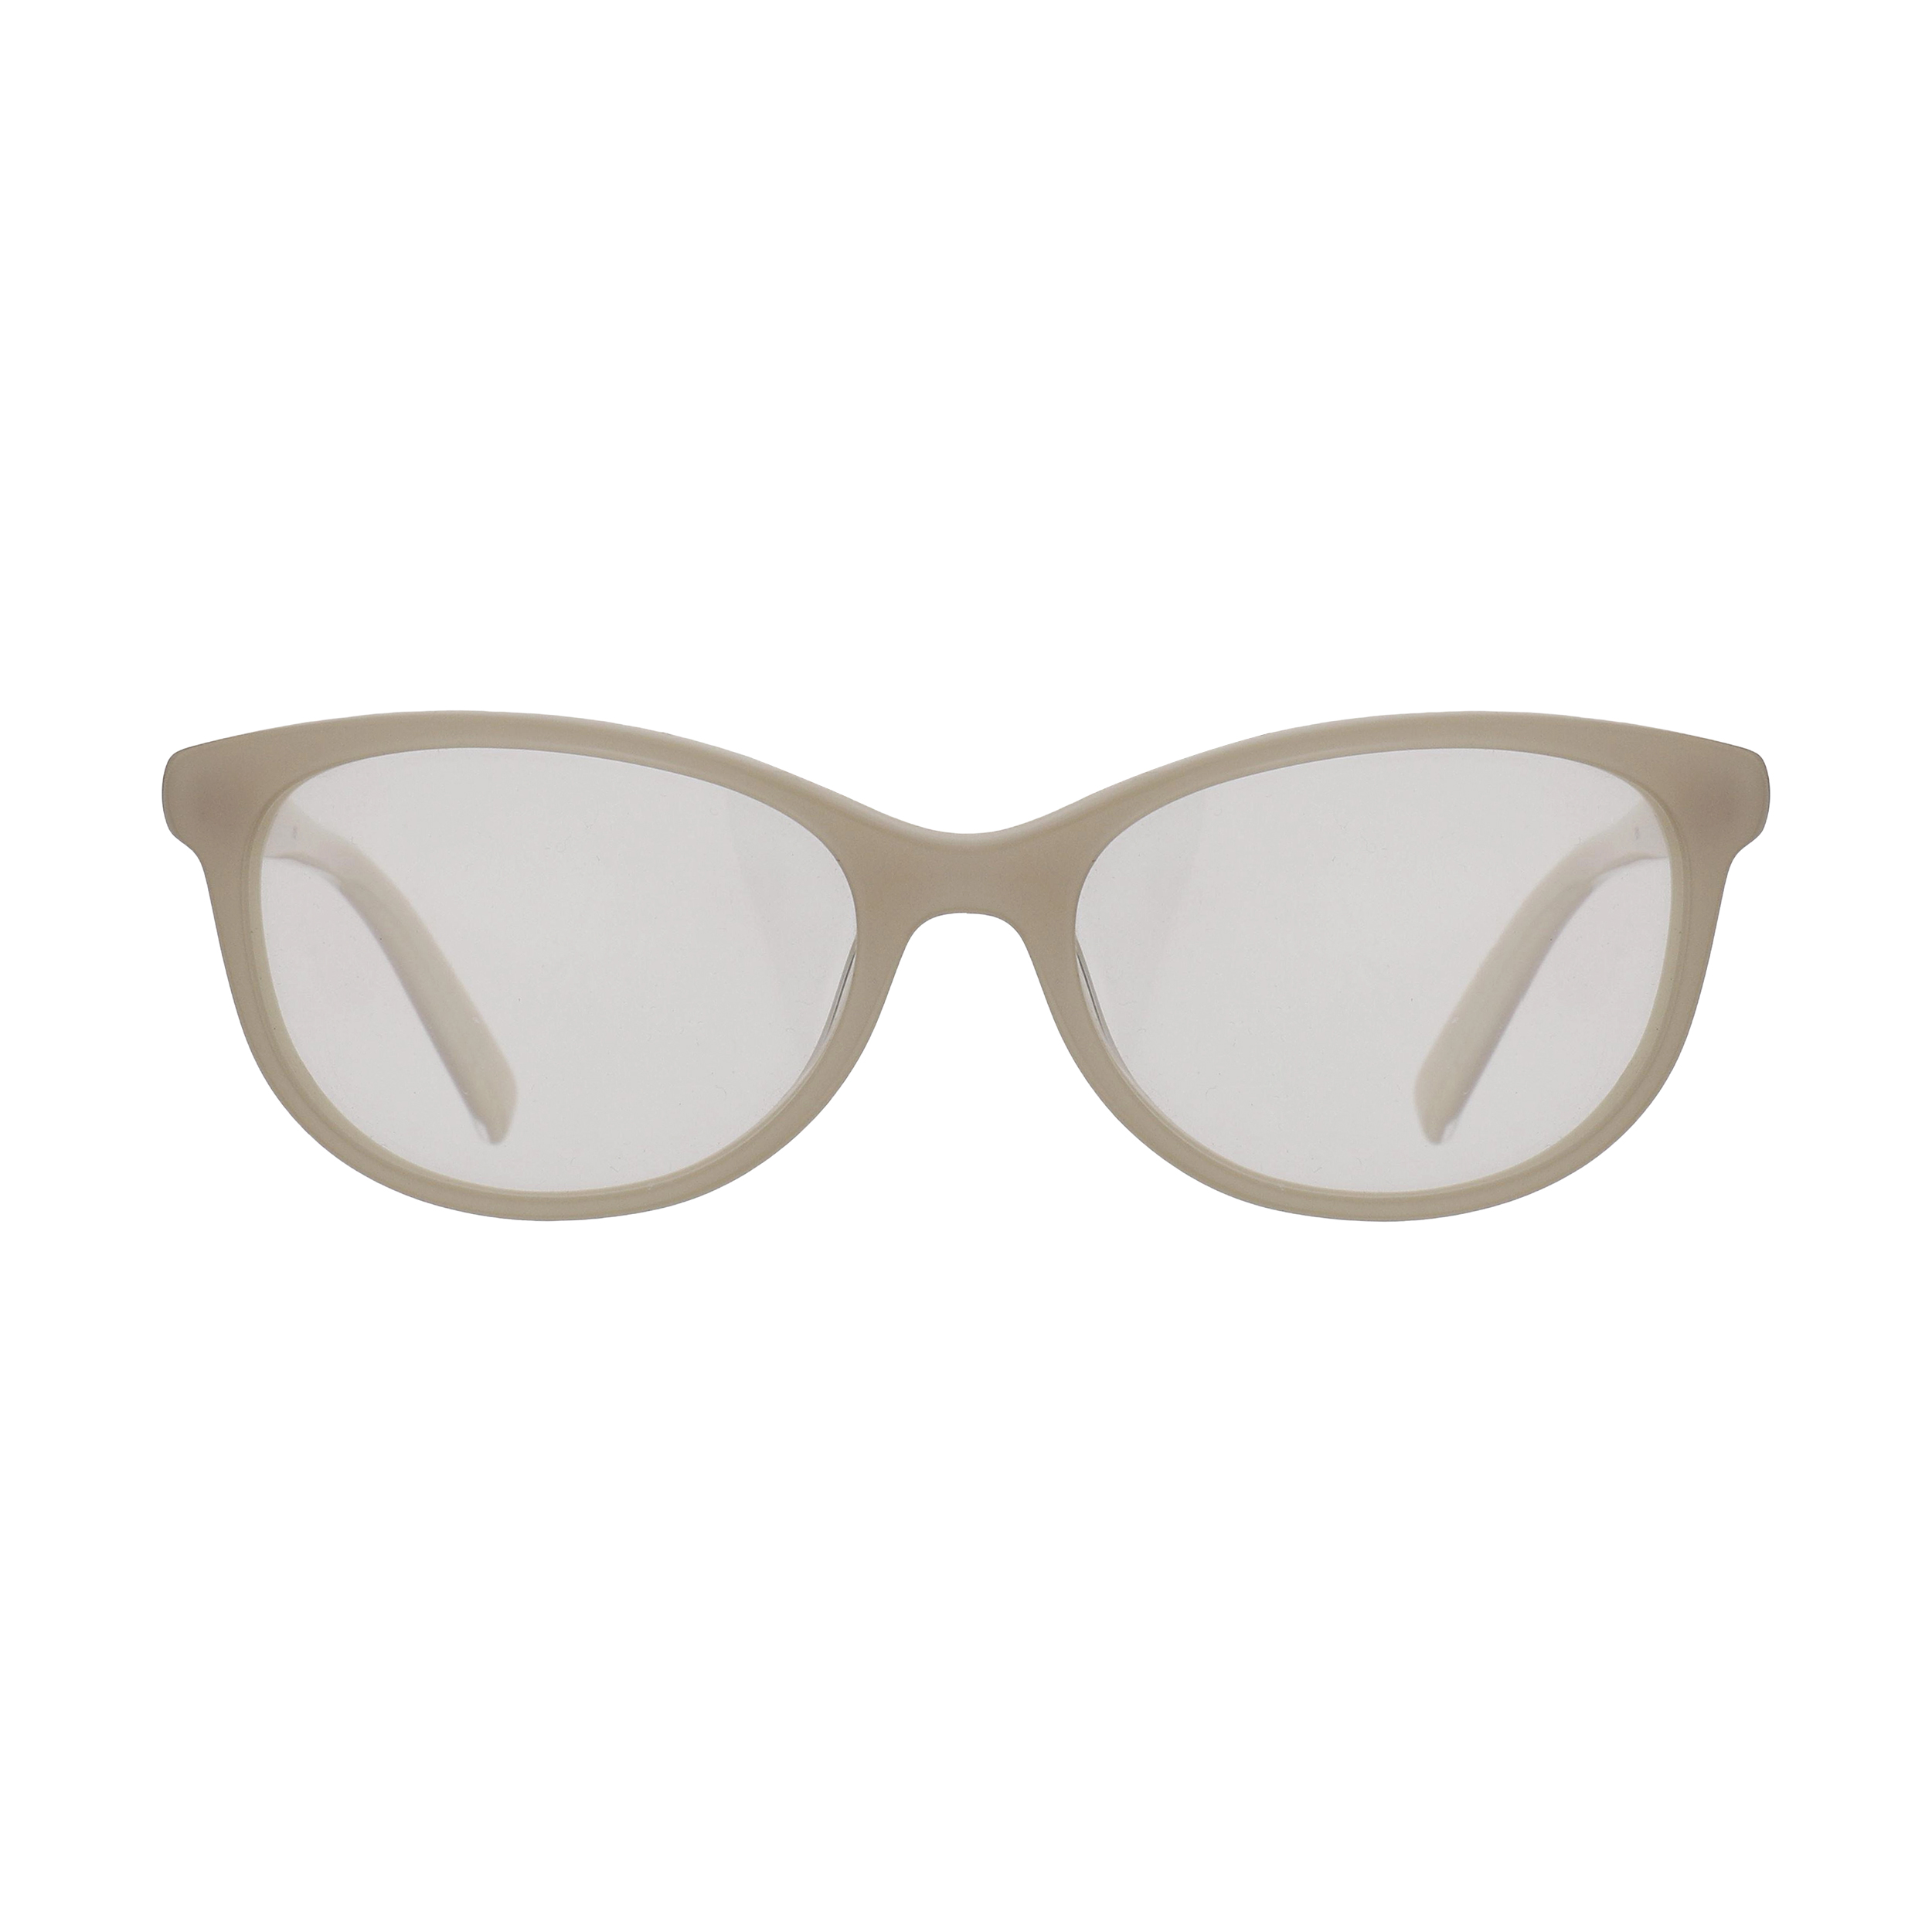 فریم عینک طبی بچگانه کلویی مدل 3600-968